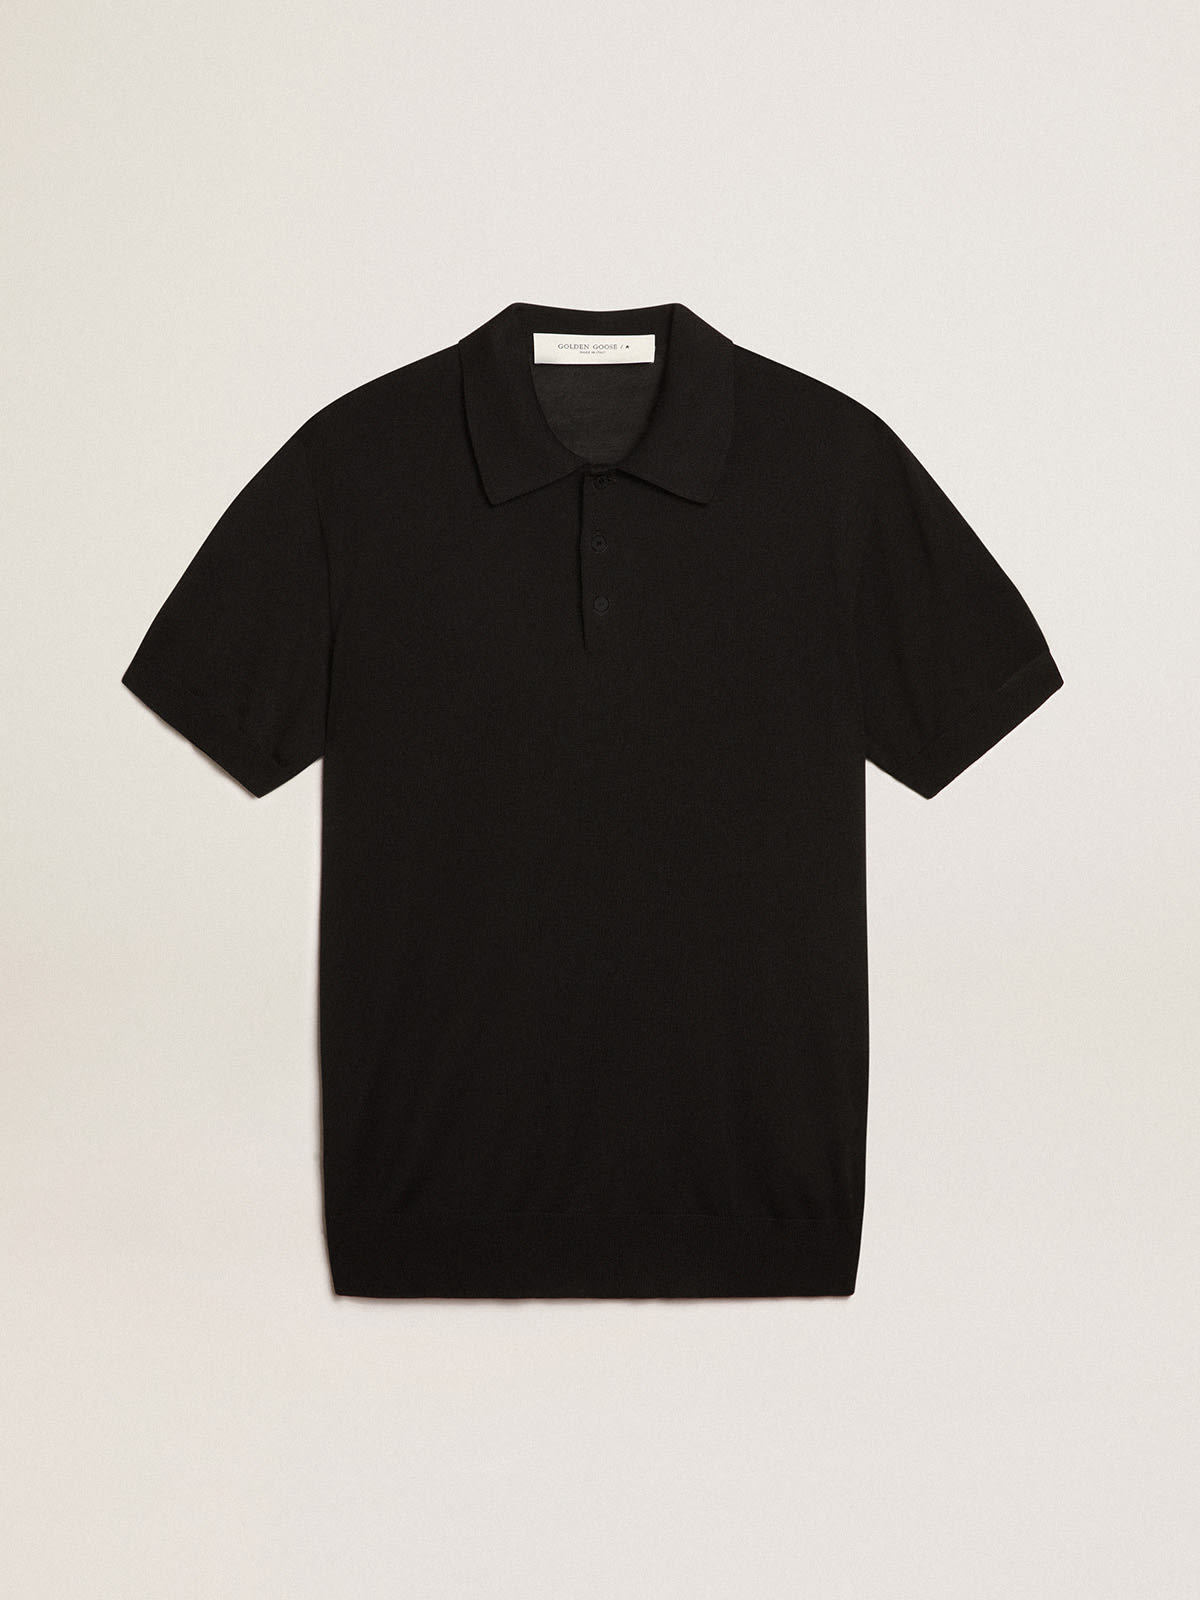 Golden Goose - Men’s short-sleeved polo shirt in black merino wool in 